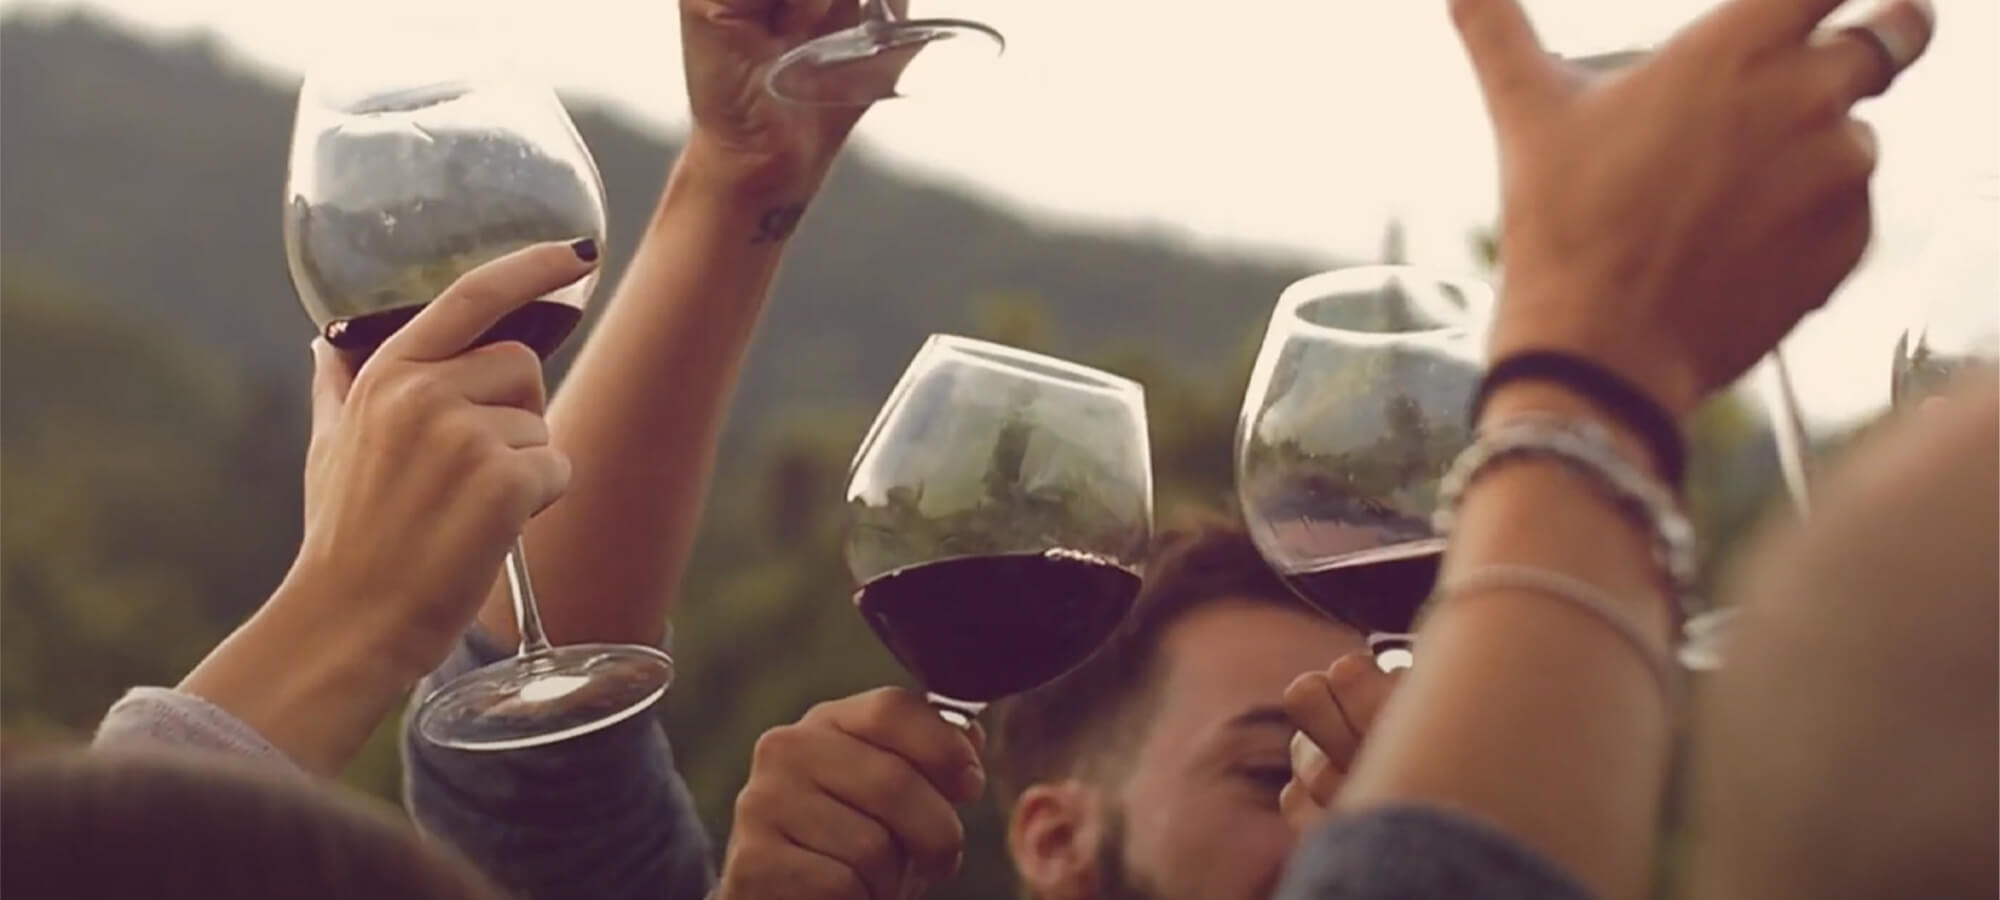 Get to Know Rioja Campaign